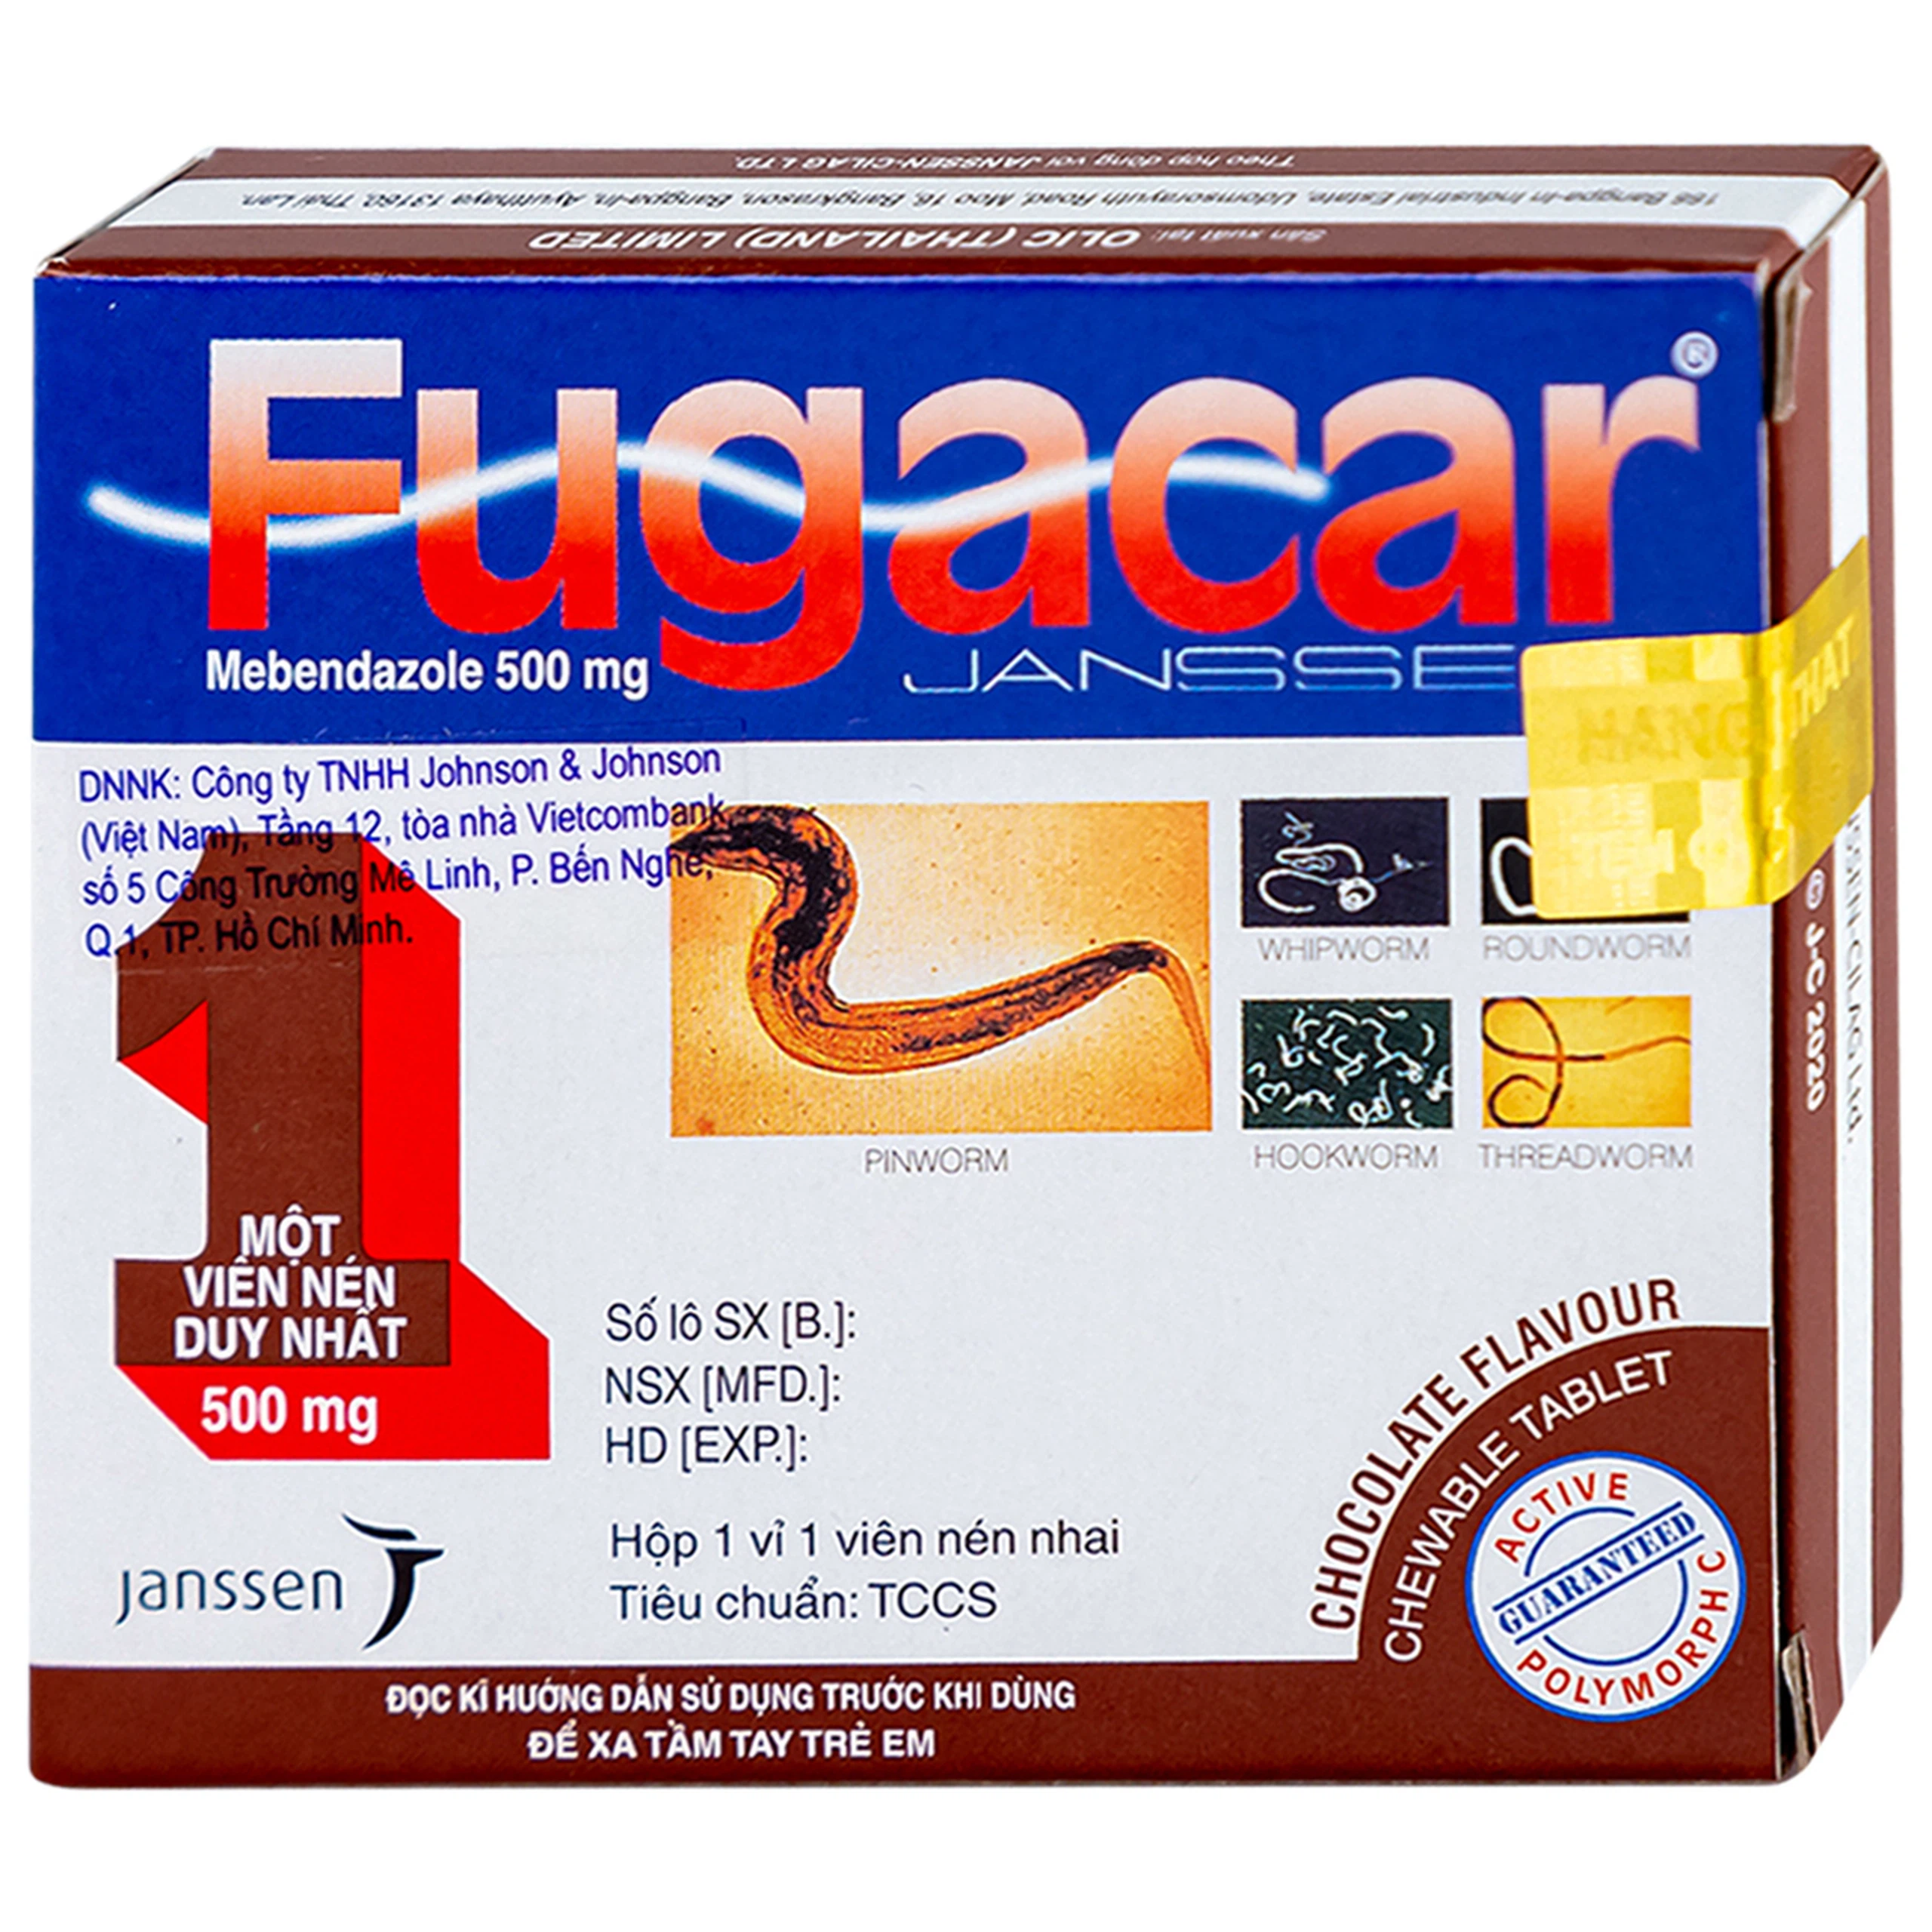 Thuốc Fugacar Janssen hương socola điều trị nhiễm một hay nhiều loại giun đường ruột (1 viên)